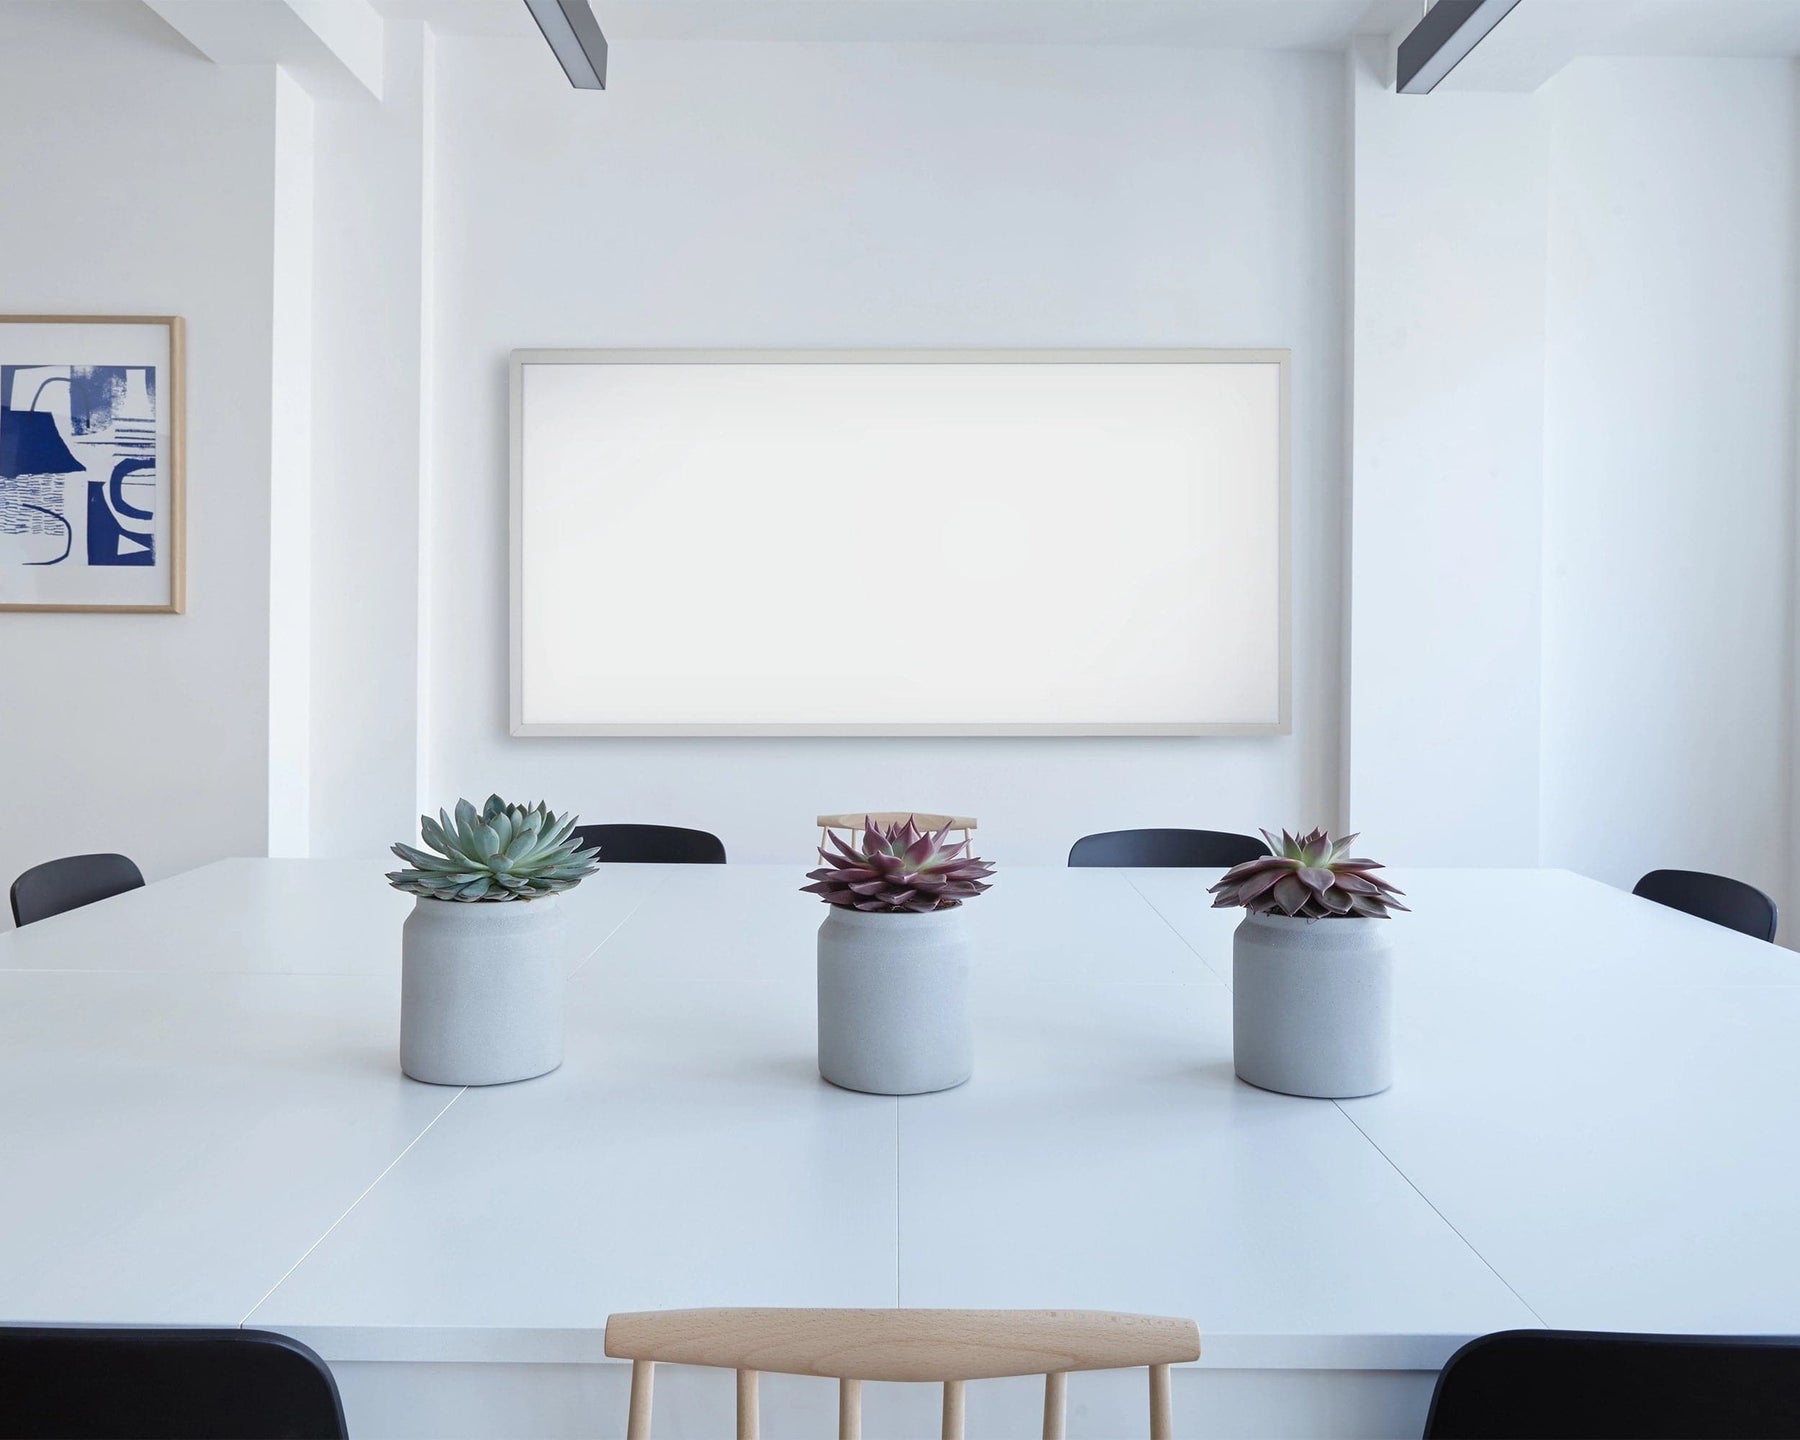 KIASA 960W Smart Wi-Fi Infrared Heating Panel - Wall Mounted In office Area 